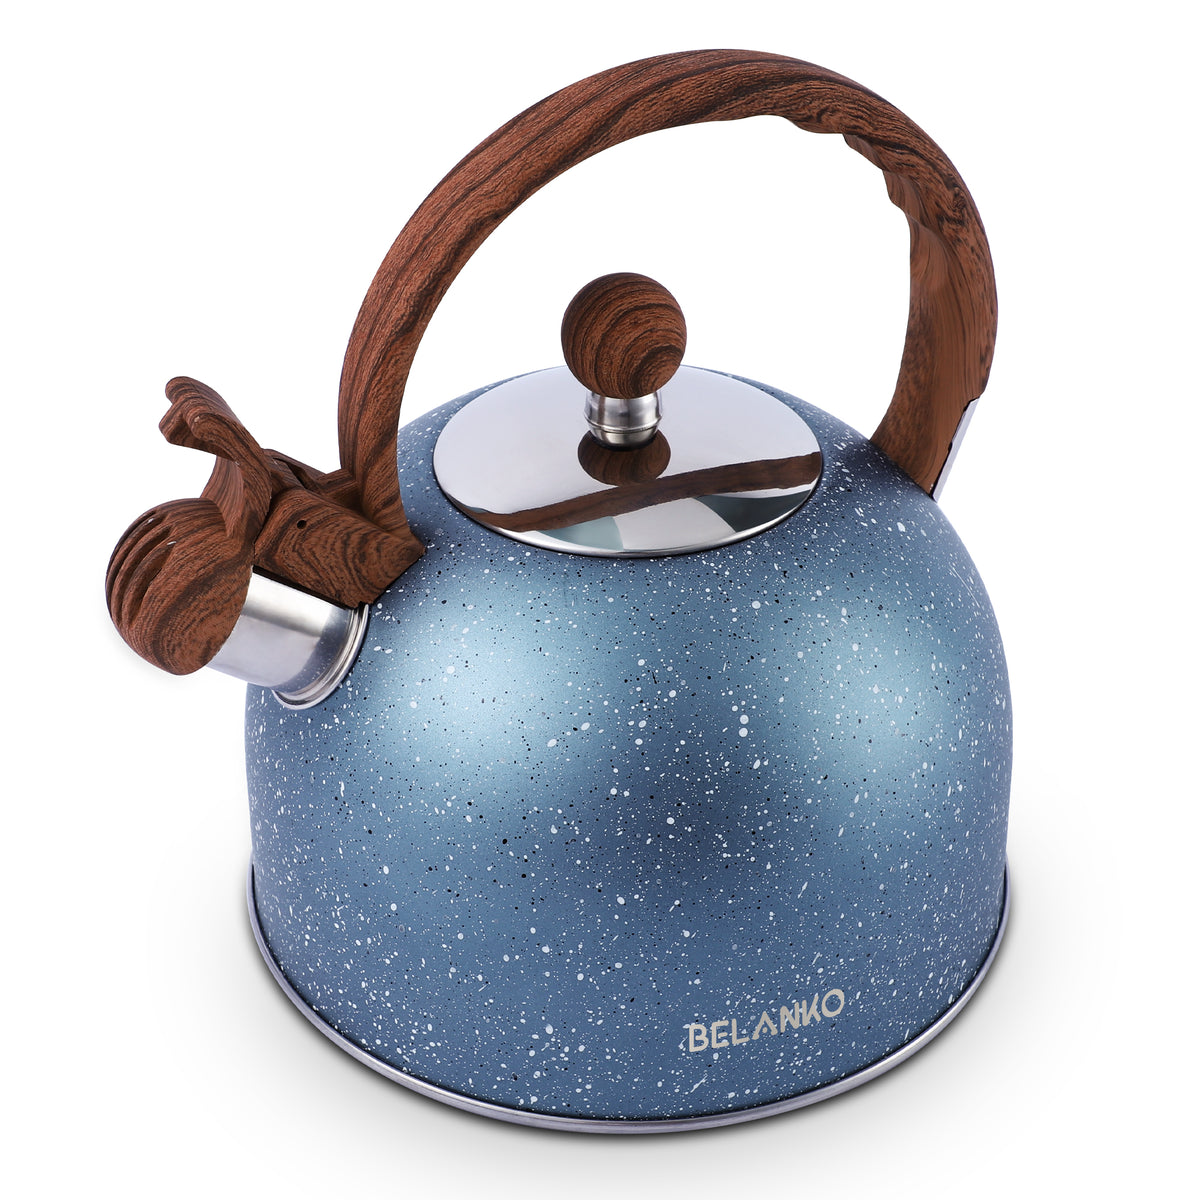 BELANKO™ 2.7 Quart Whistling Starry Tea Kettle - Gray